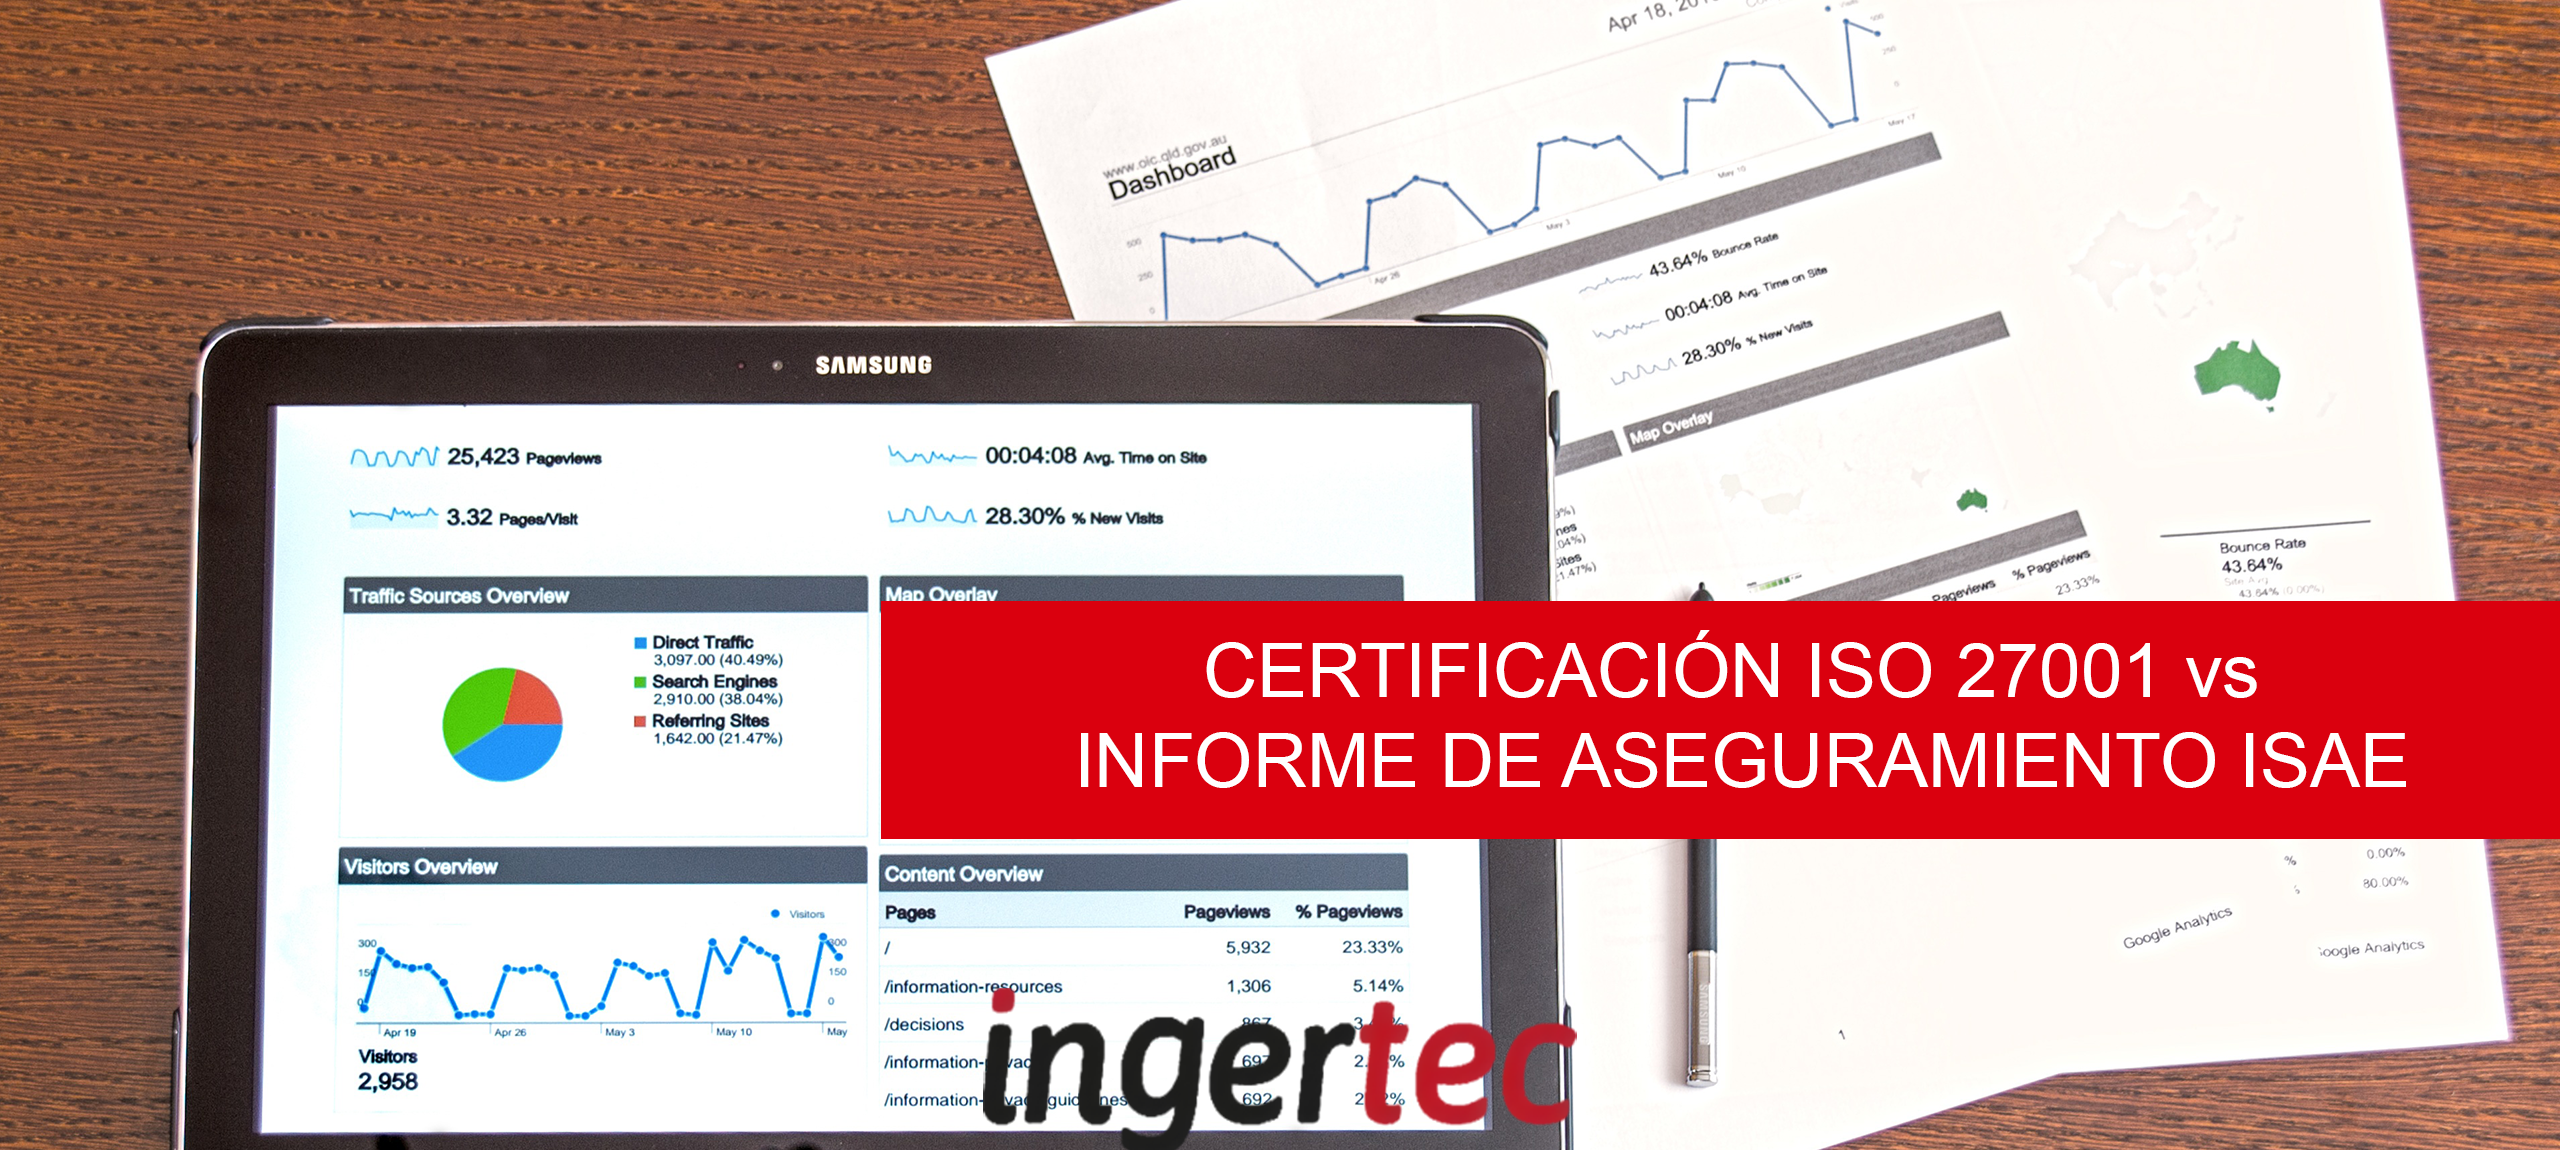 Certificación ISO 27001 vs Informe de aseguramiento ISAE